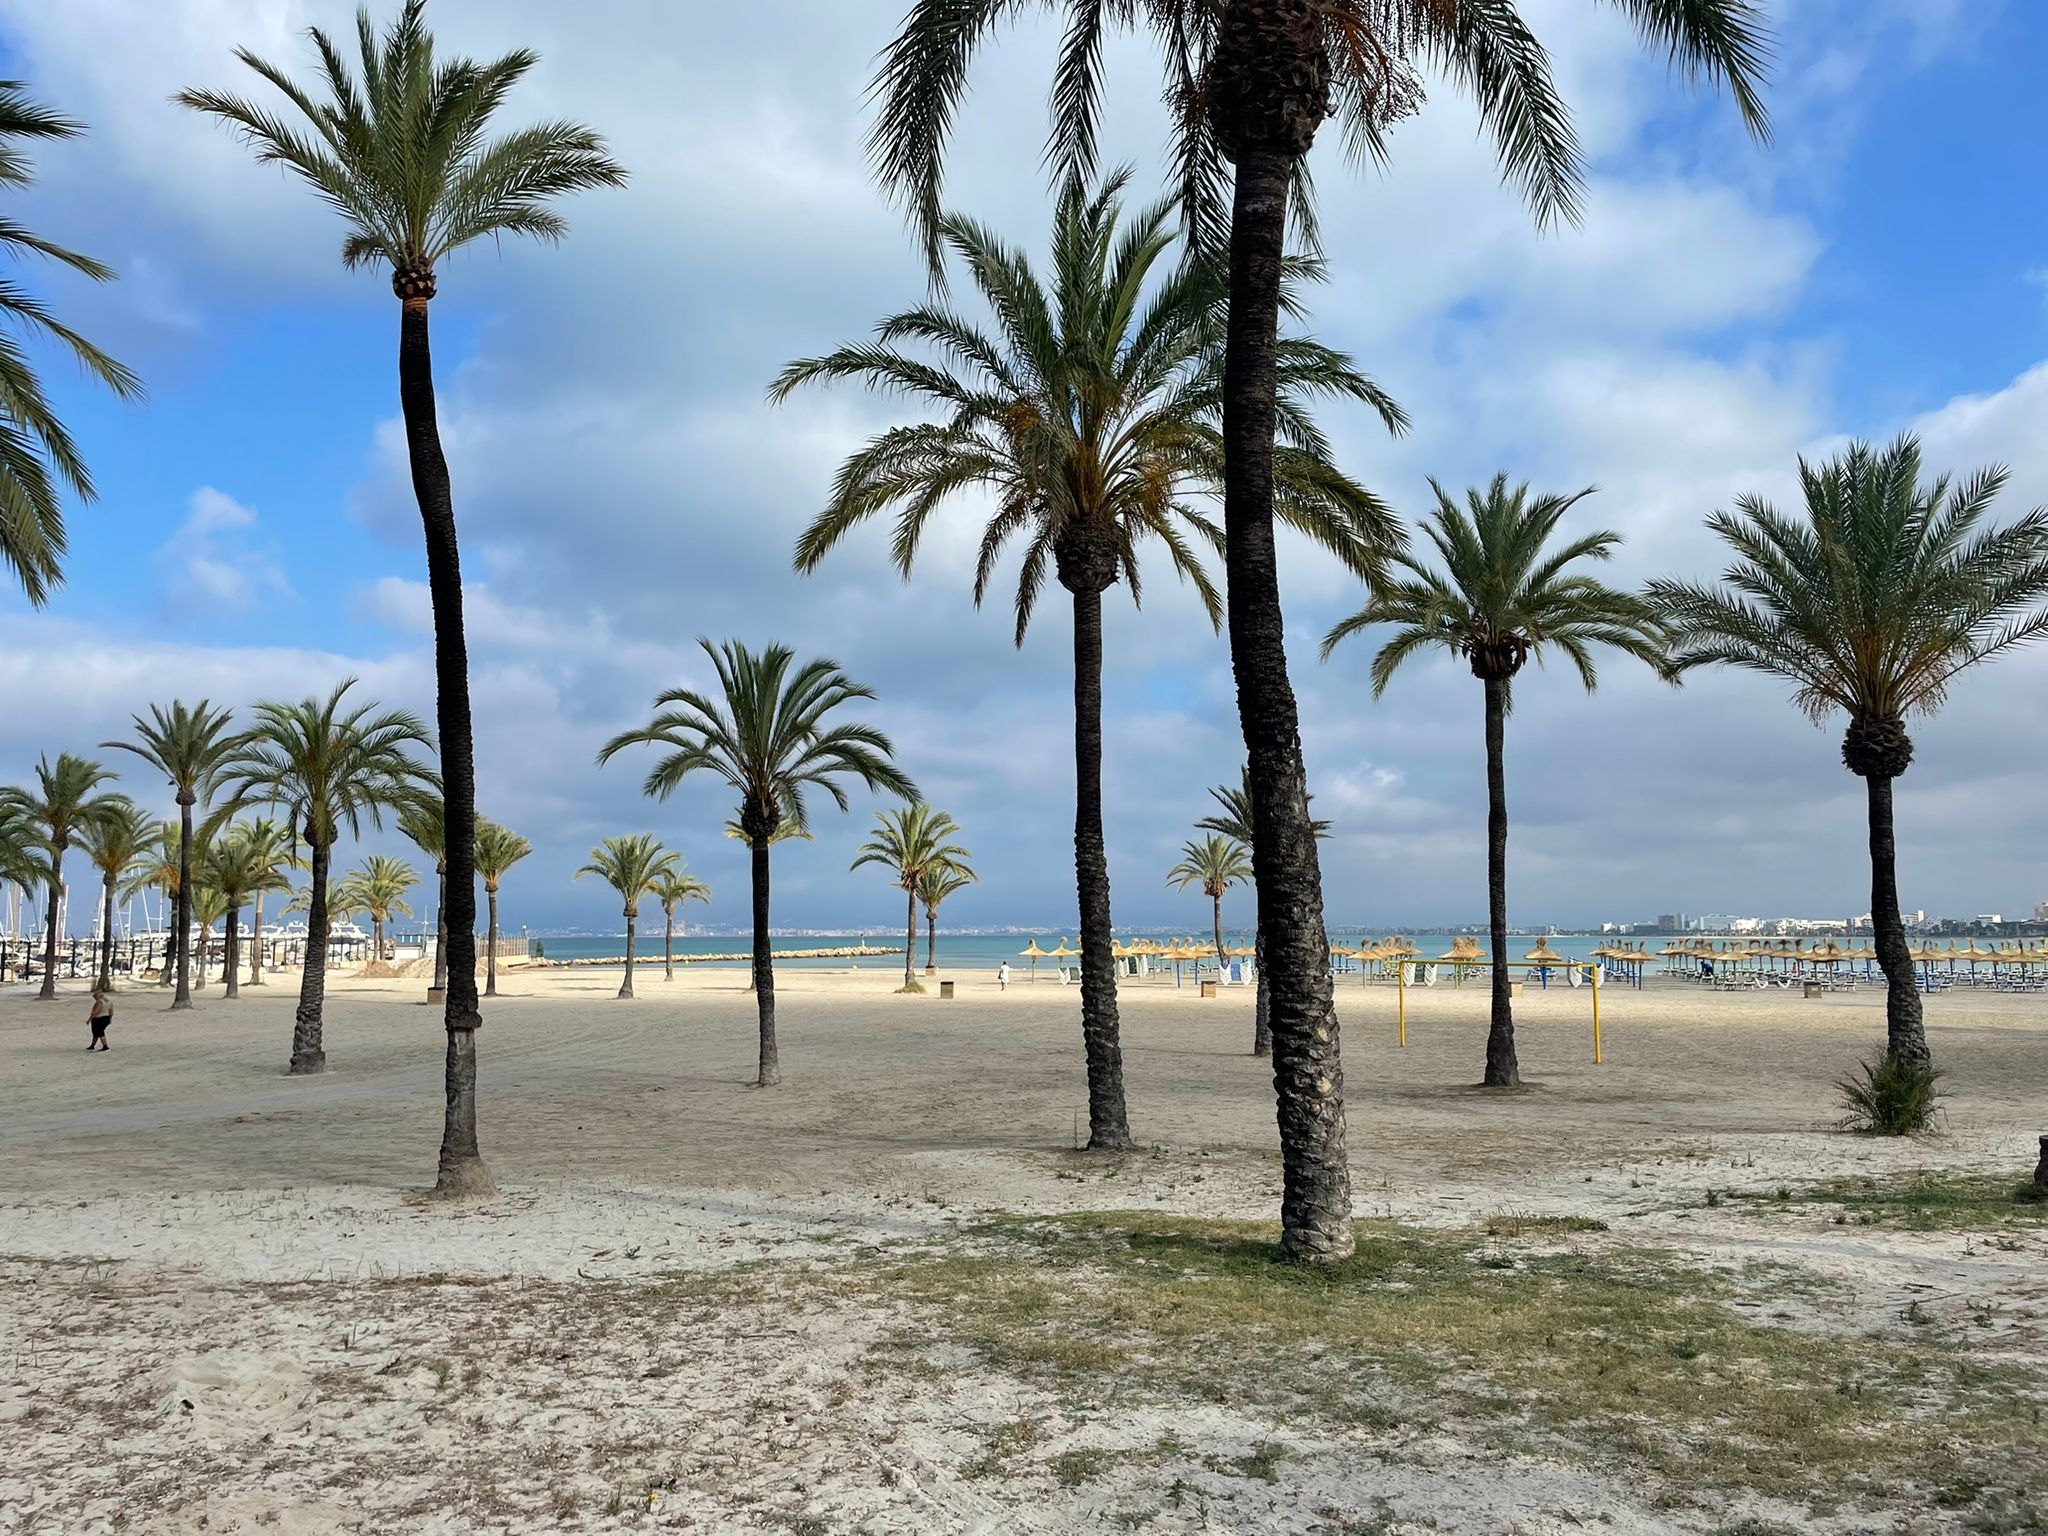 L'Arenal, la spiaggia di Palma di Maiorca: Pasqua 2022 vede Spagna e Grecia come mete gettonate